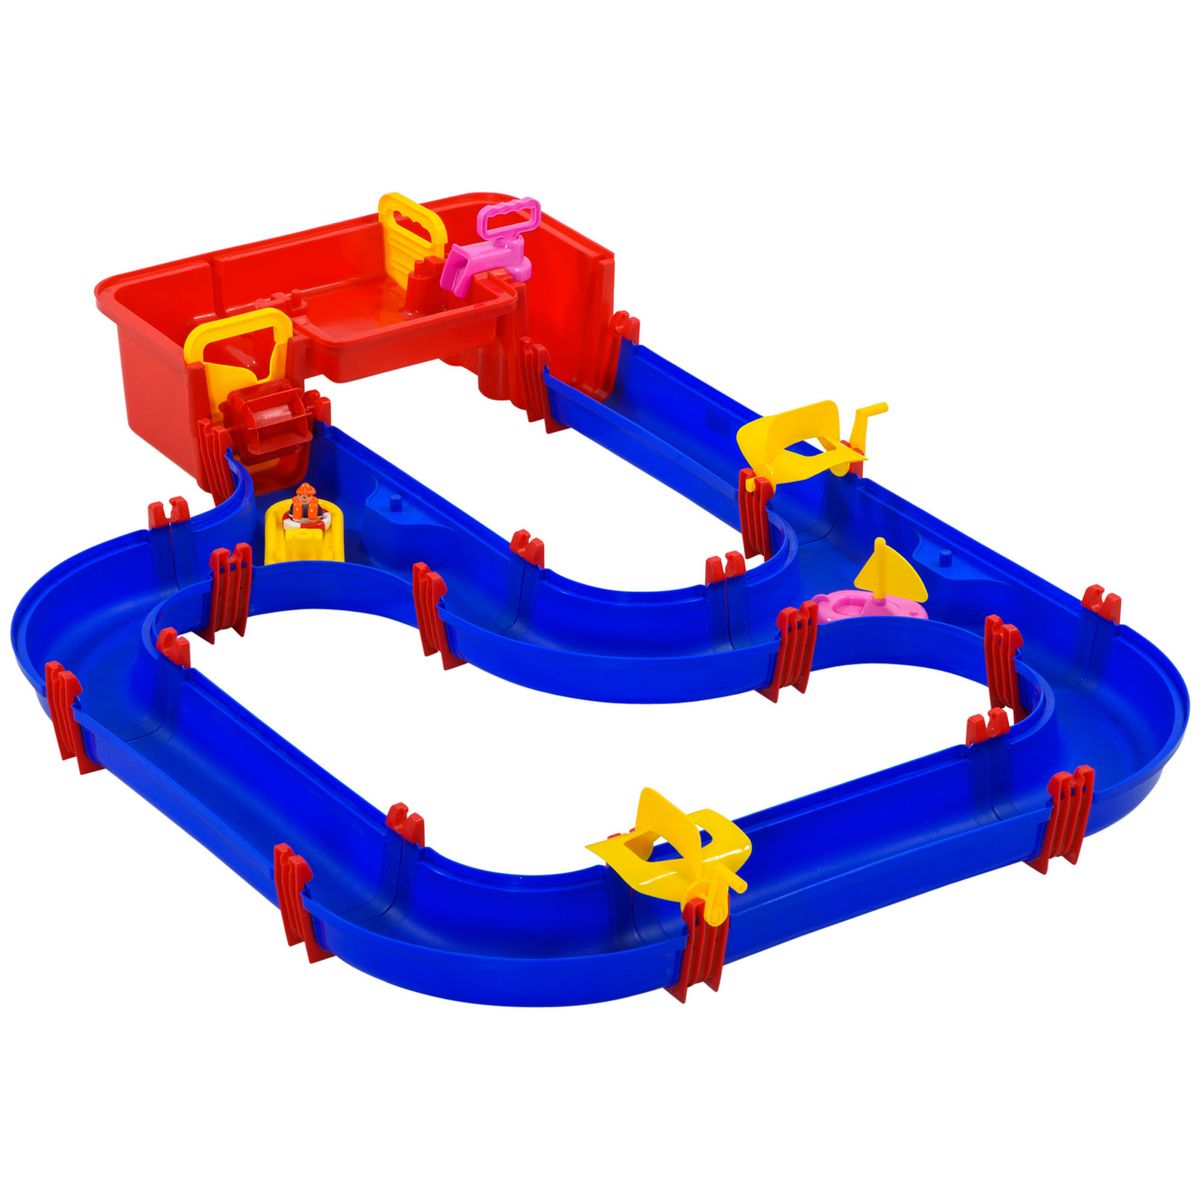 HOMCOM Circuit aquatique enfant - circuit d'eau - jeu plein air enfant -  jeu d'eau - total 53 accessoires inclus - PP bleu rouge pas cher 